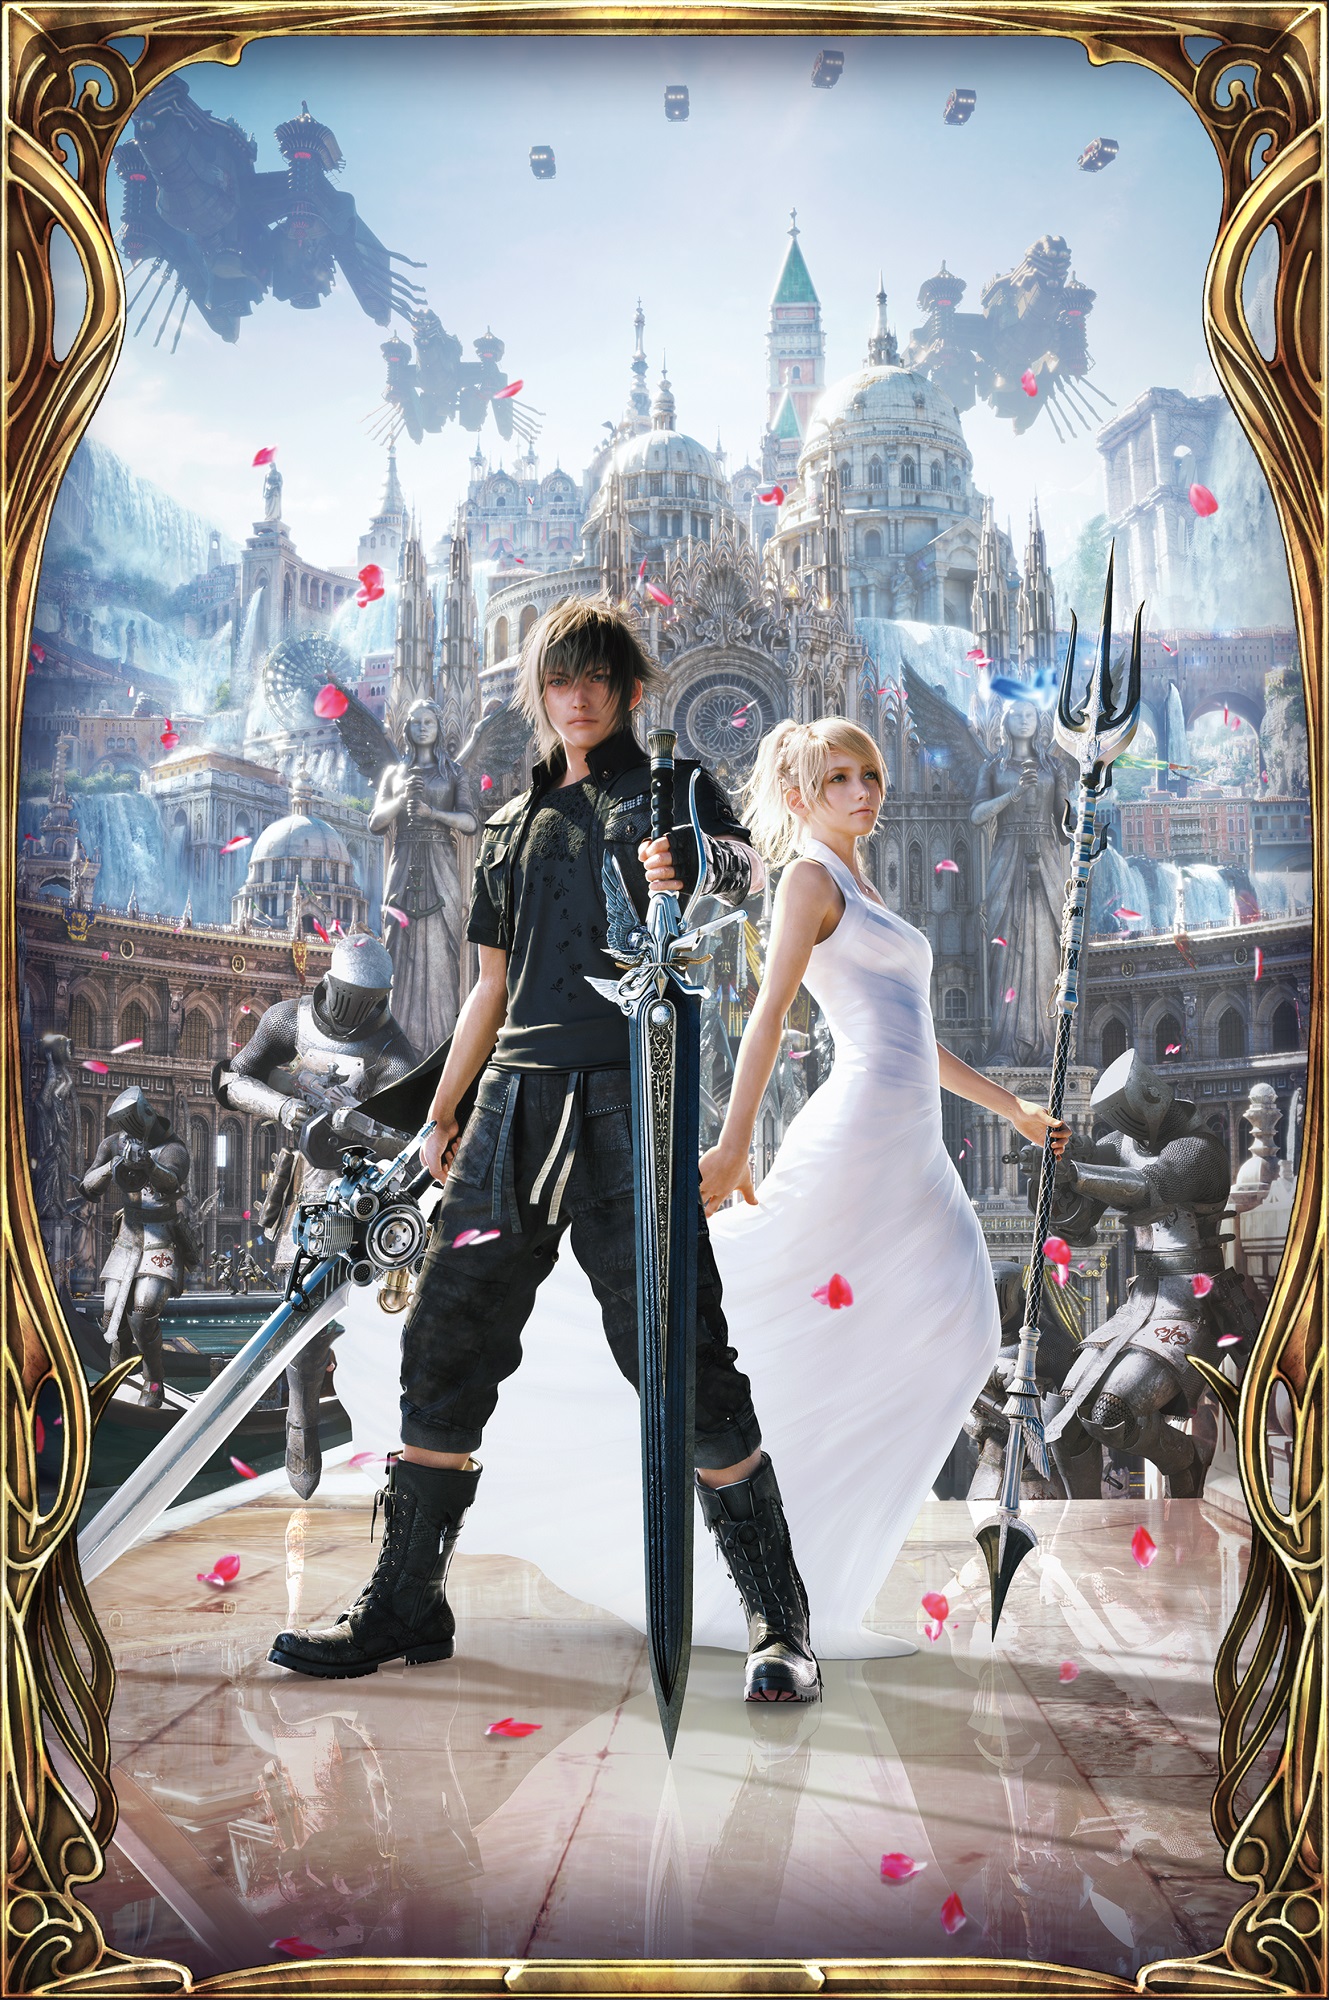 Dissidia Final Fantasy: Opera Omnia - Offline Mode: A New